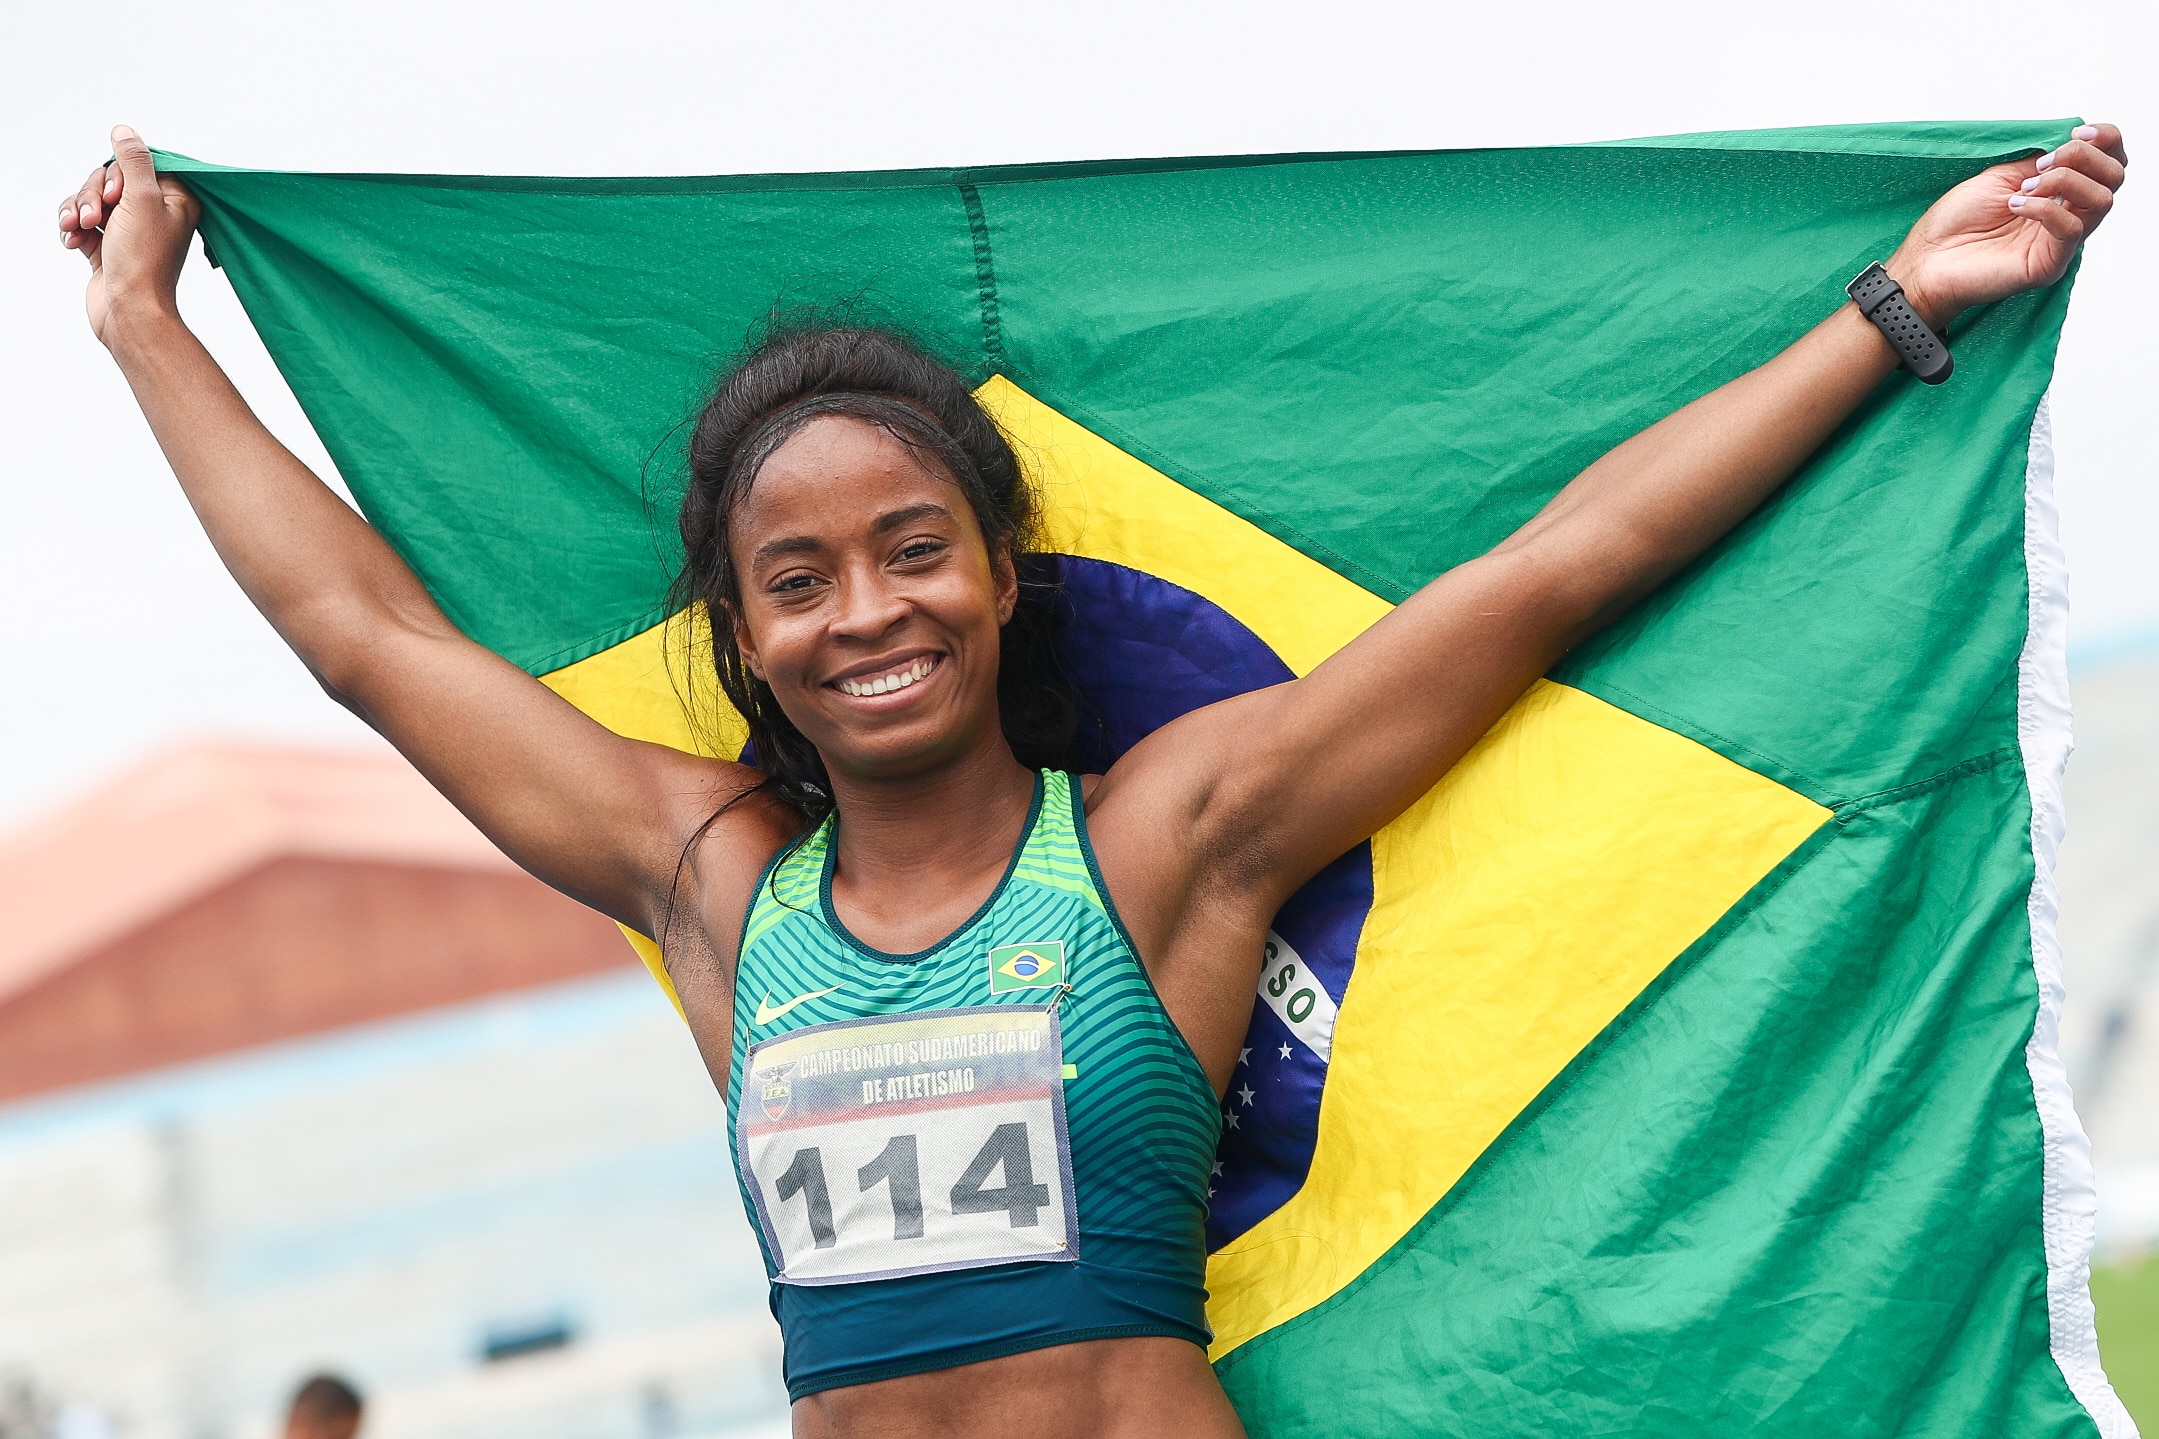 Campeonato Sul-Americano de atletismo - Vitória Rosa - Felipe Bardi